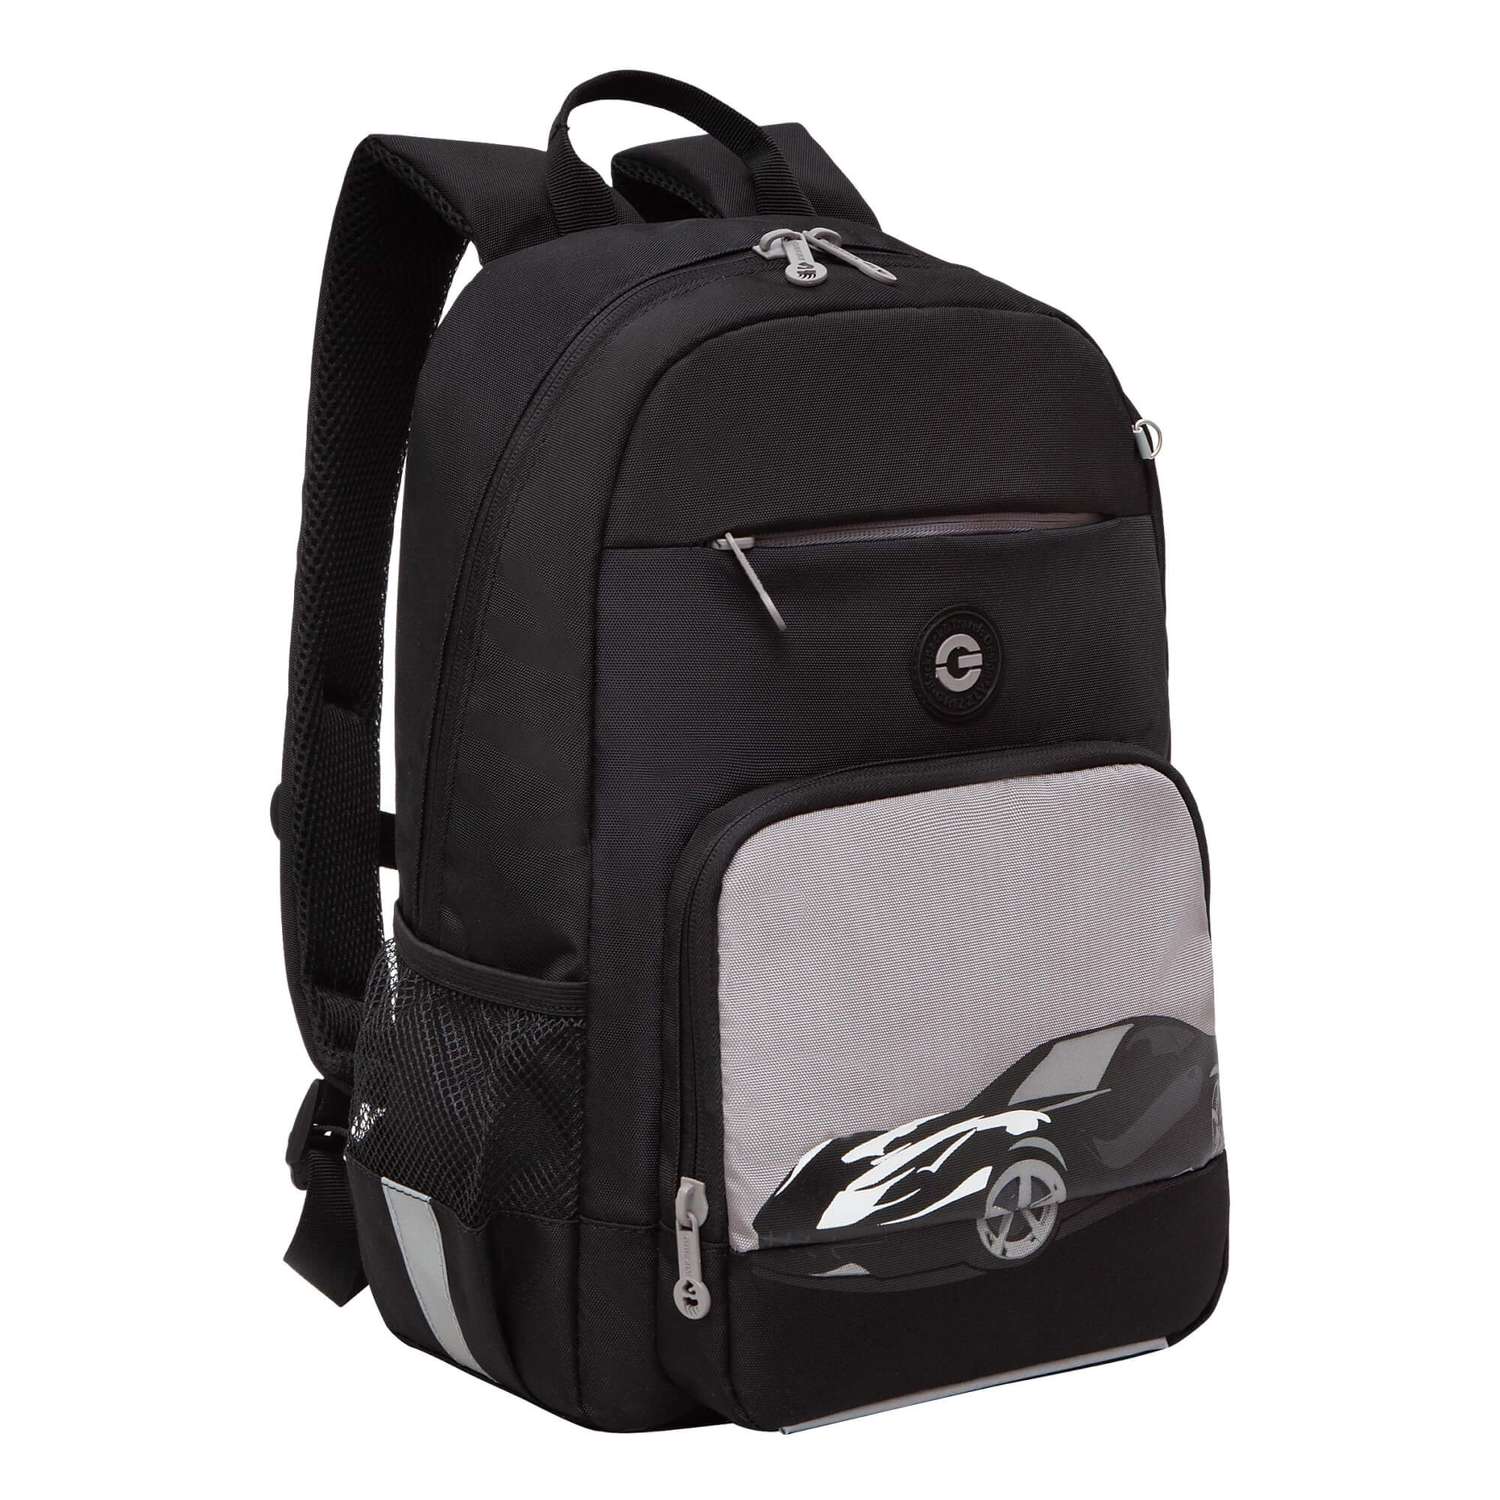 Рюкзак школьный Grizzly Черный-Серый RB-355-1/2 - фото 1